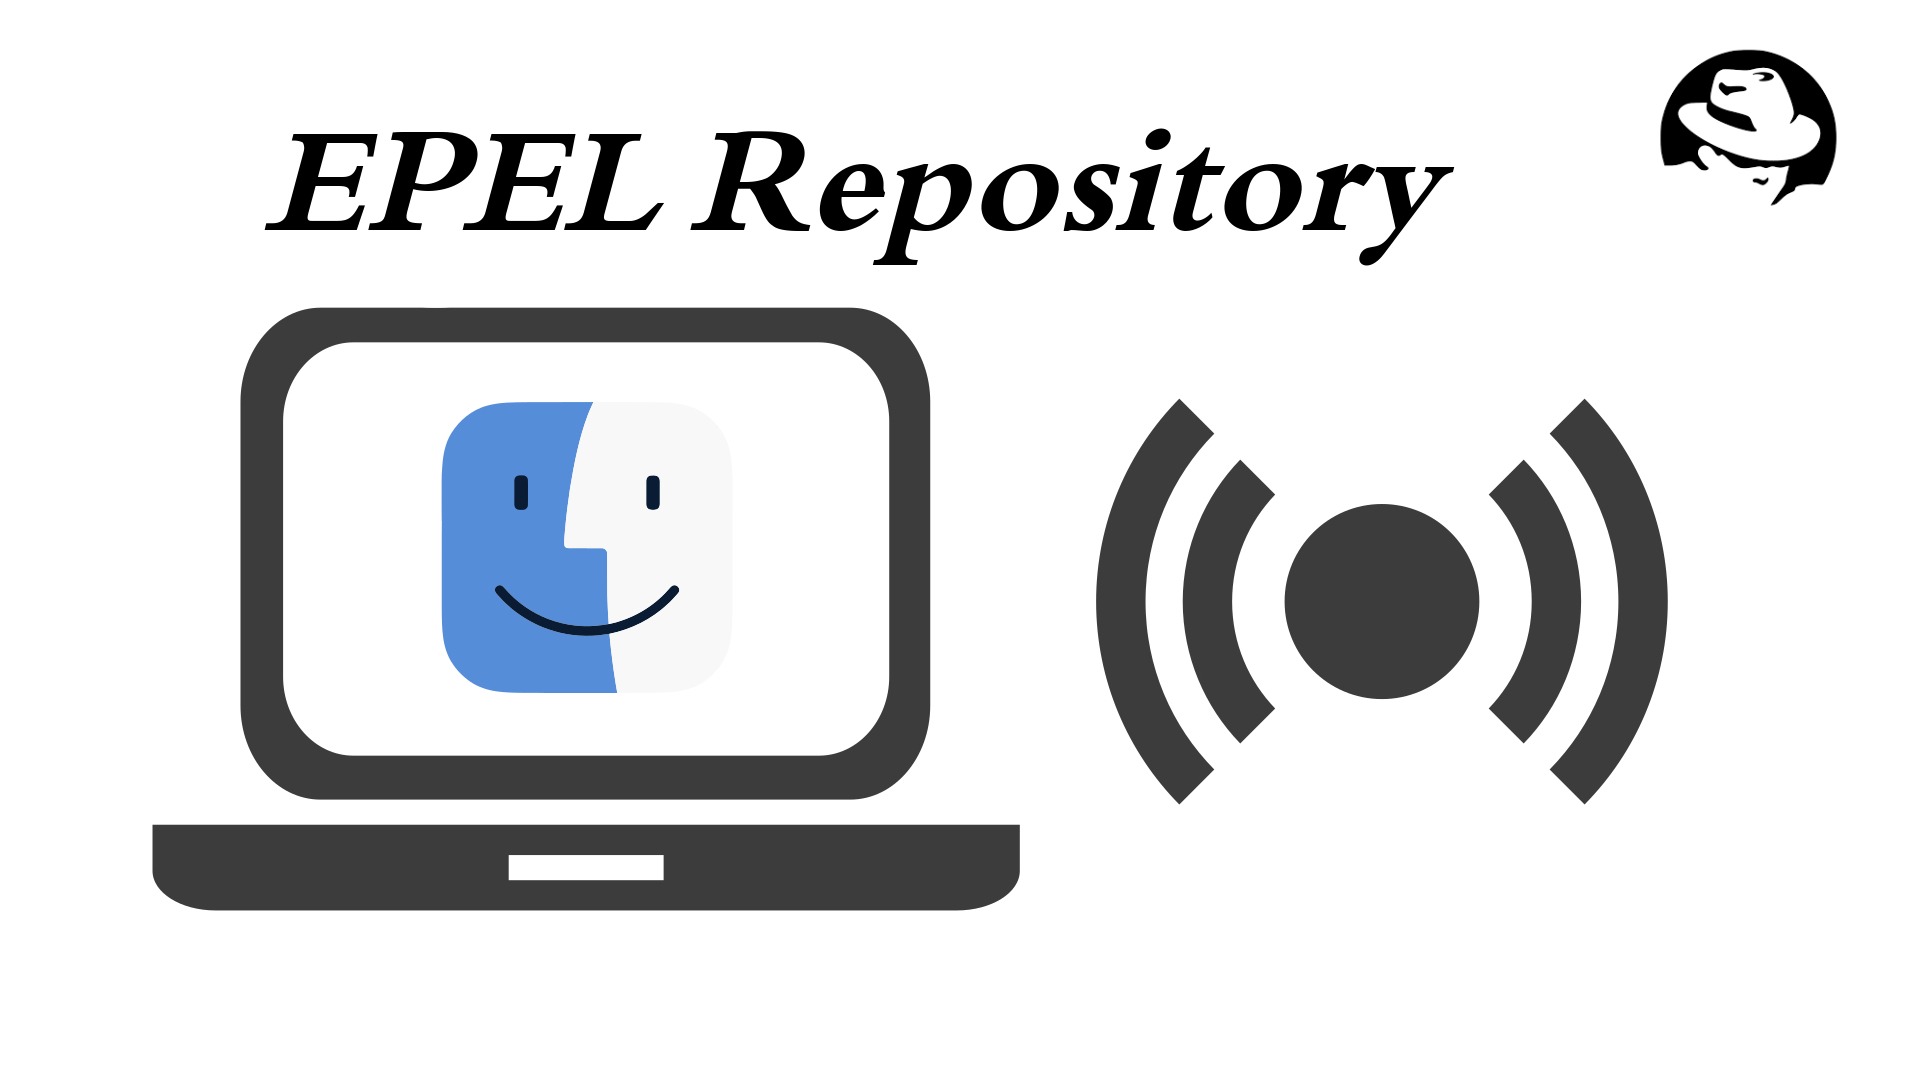 ریپازیتوری EPEL در توزیع های RHEL/CentOS 7.x/6.x/5.x